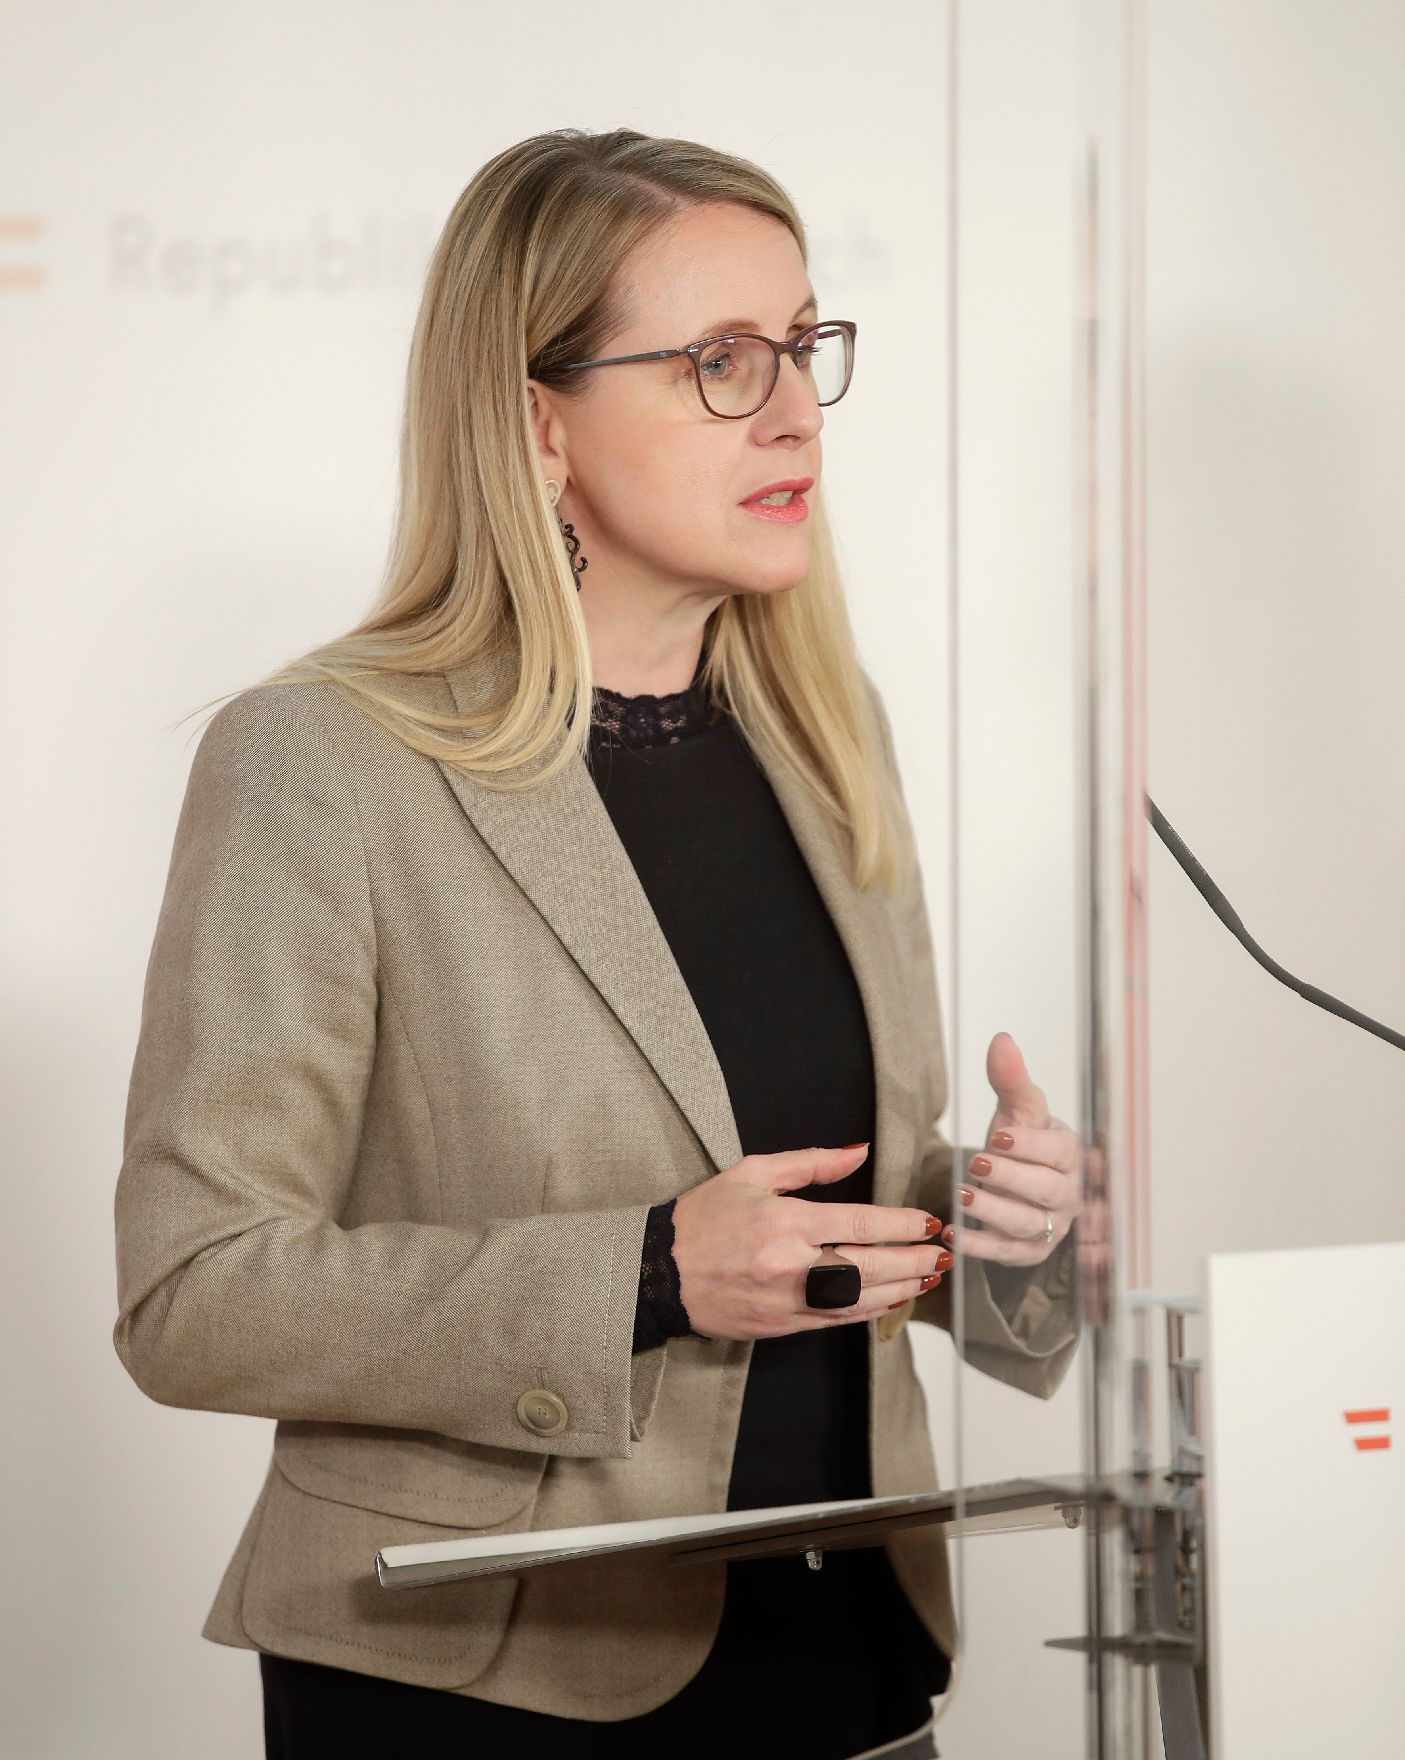 Am 17. November 2020 fand ein Pressestatement zu den Maßnahmen gegen die Krise im Bundeskanzleramt statt. Im Bild Bundesministerin Margarete Schramböck.